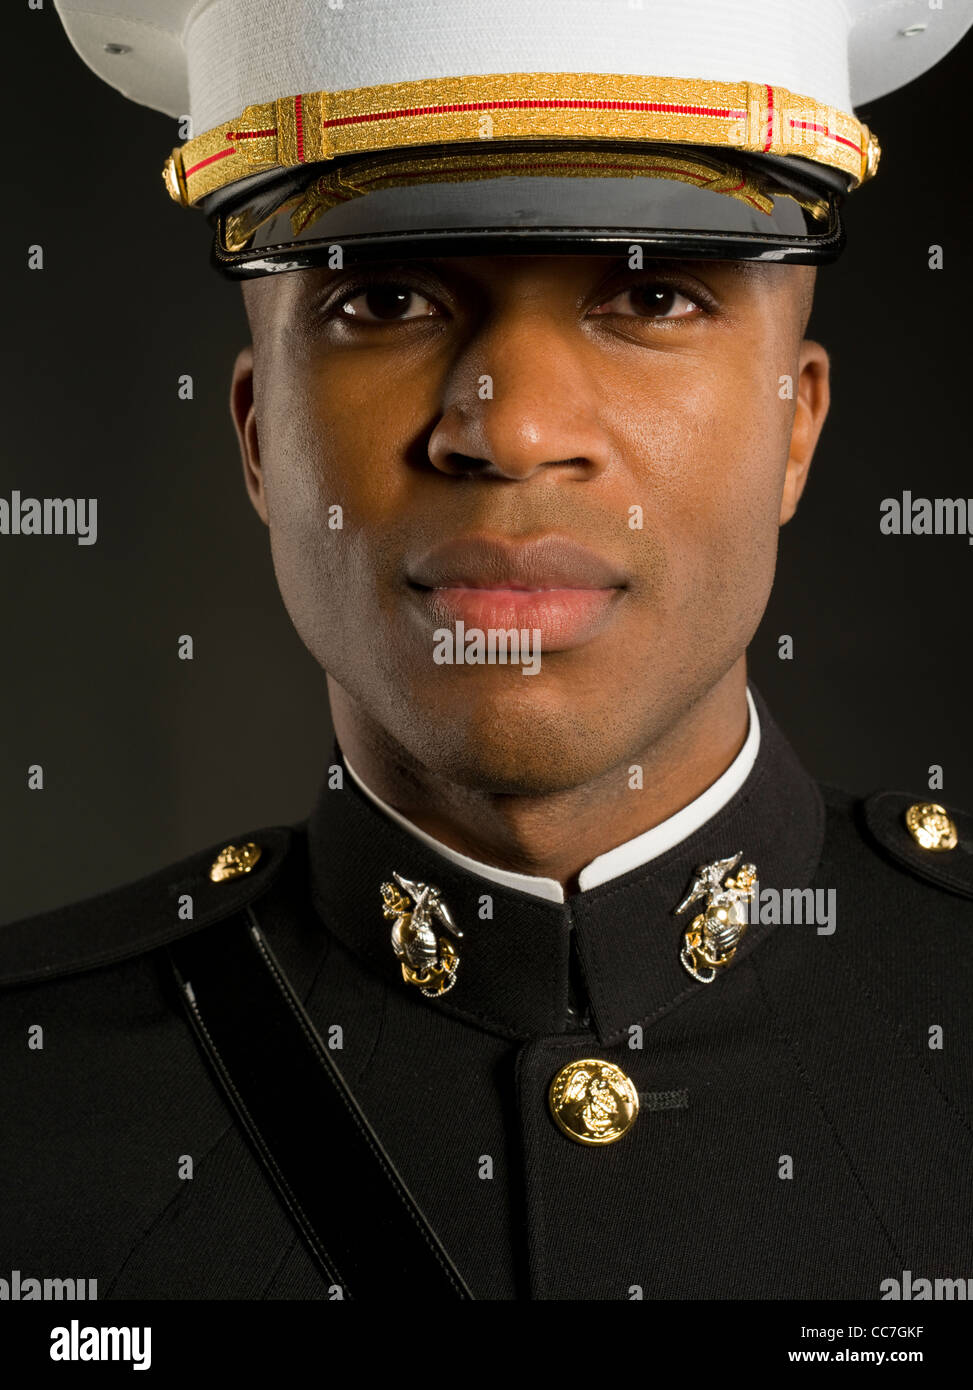 United States Marine Corps Officer im blauen Kleid 'A' Uniform einschließlich Medaillen Bänder, weiße Handschuhe, Kasernen Abdeckung (Hut) Schwert Stockfoto